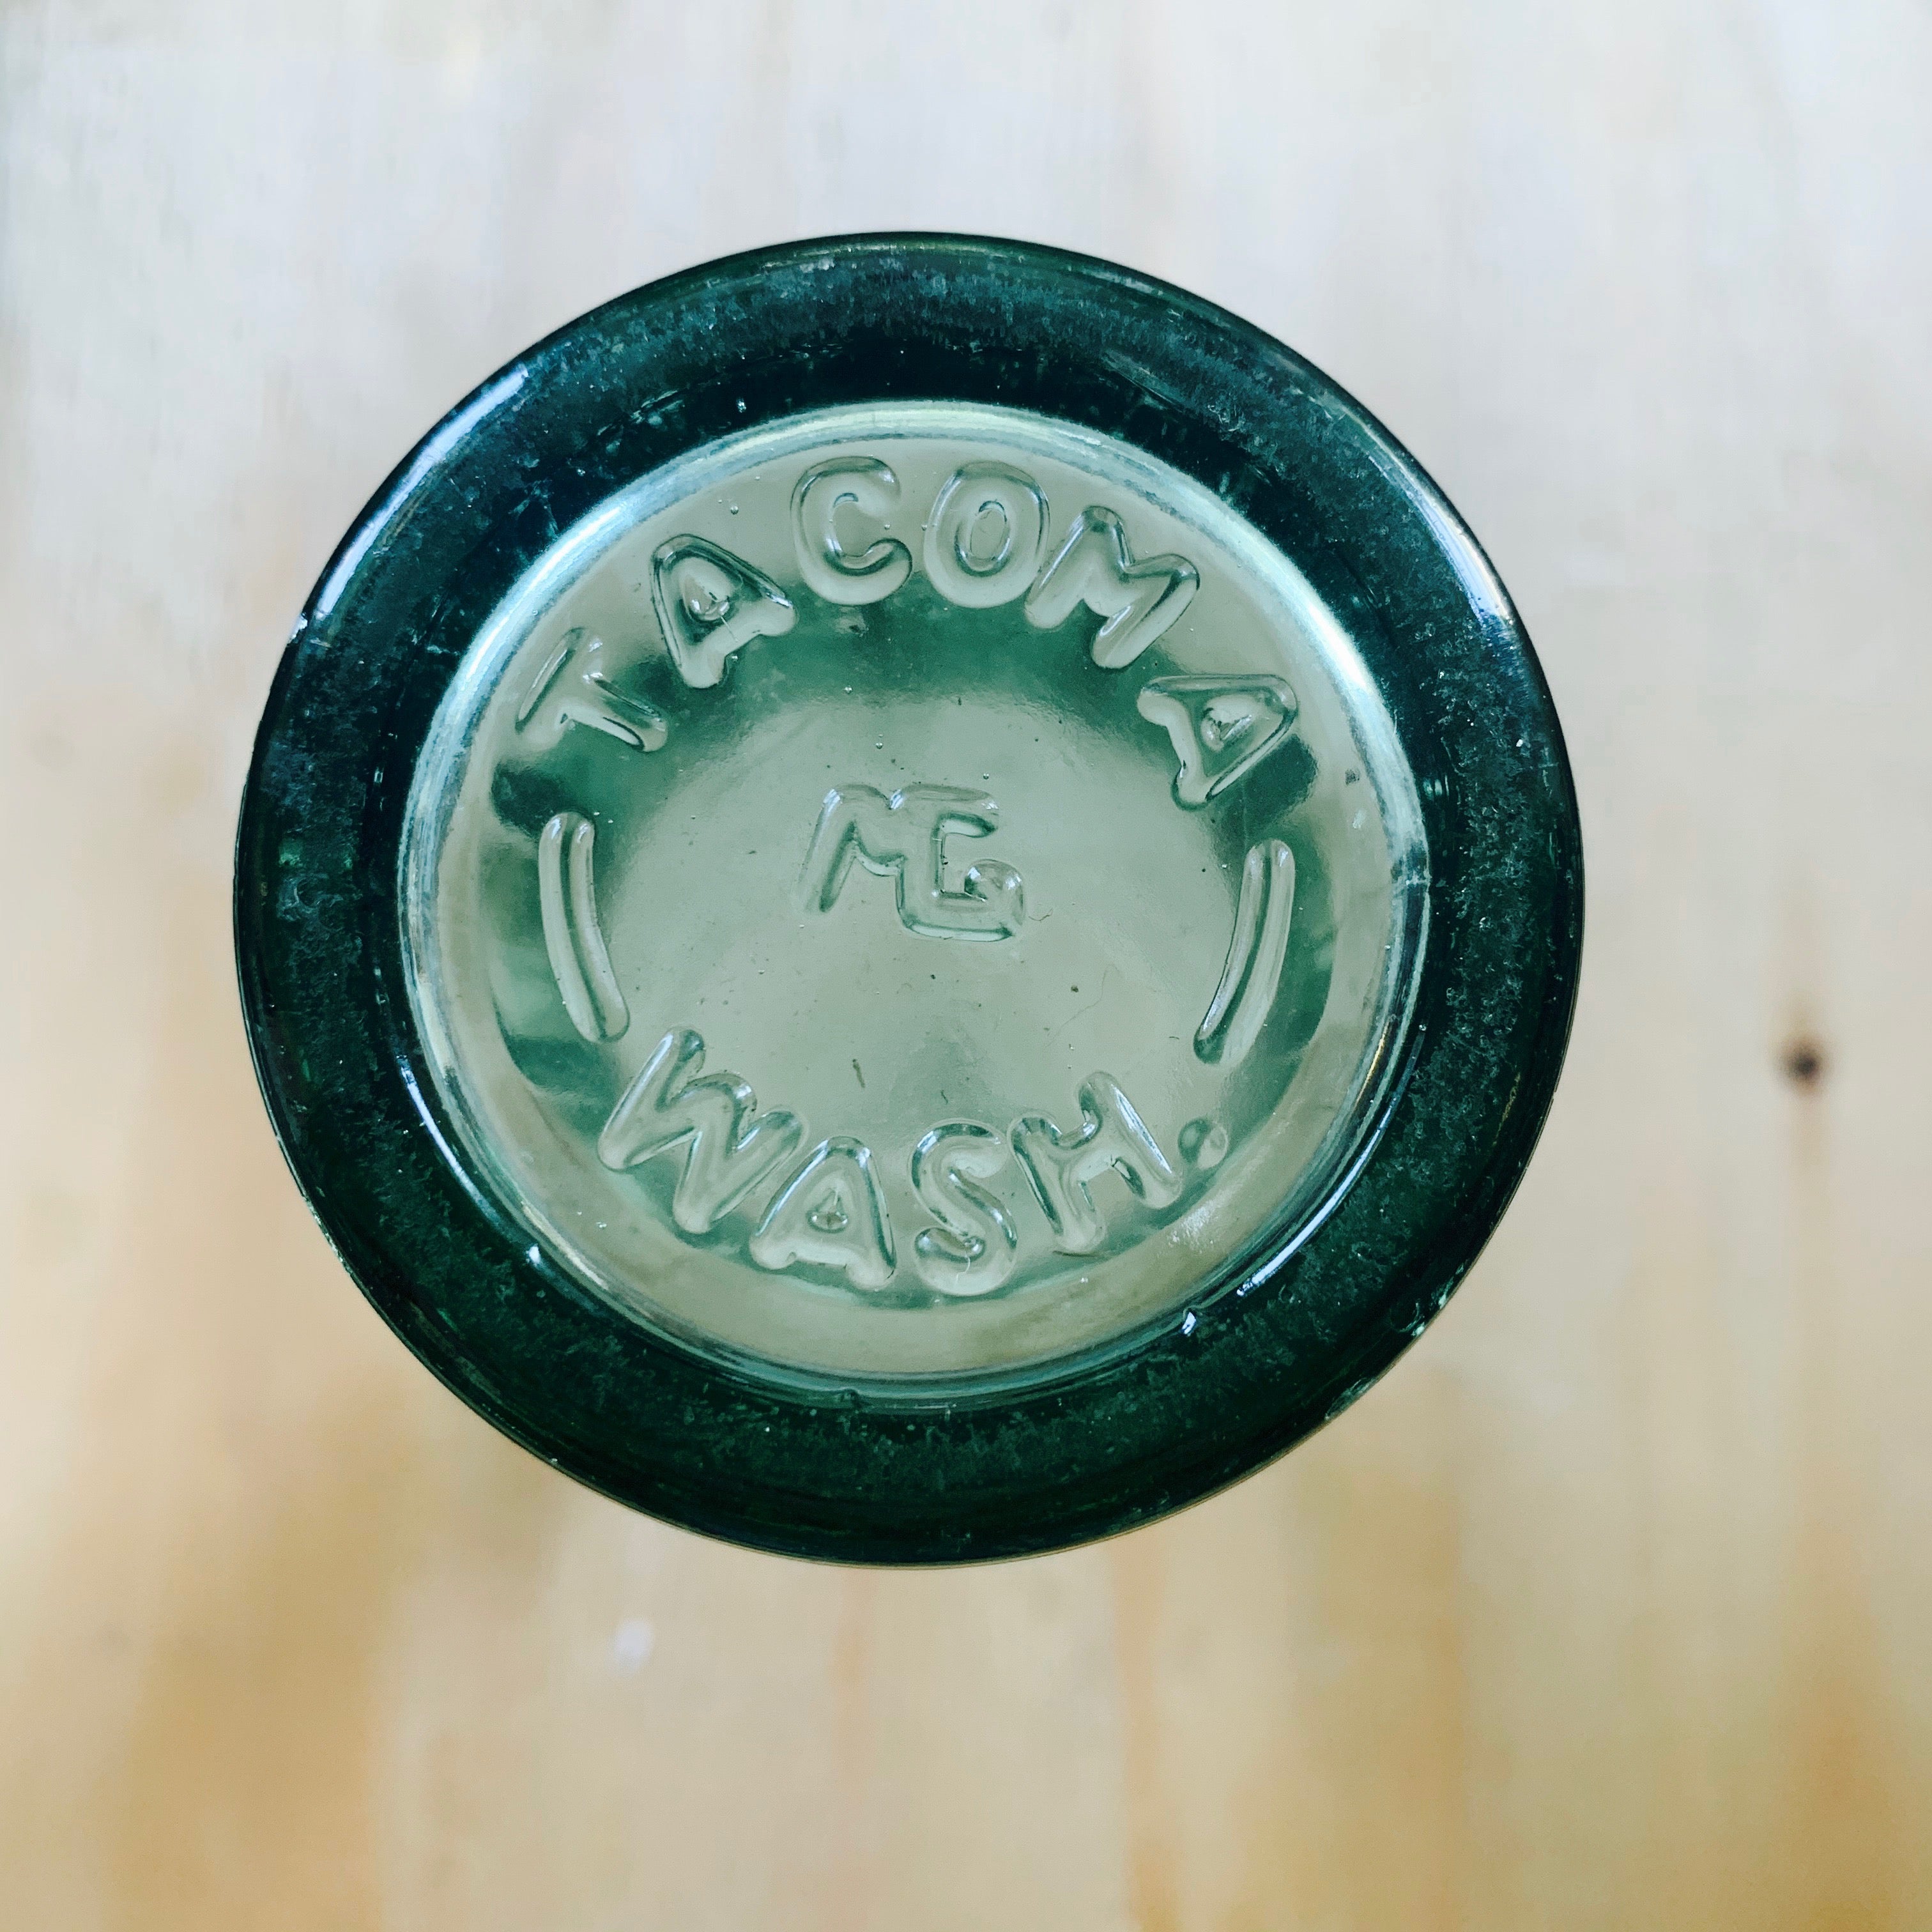 Vintage Find, Tacoma Made Coke Bottle